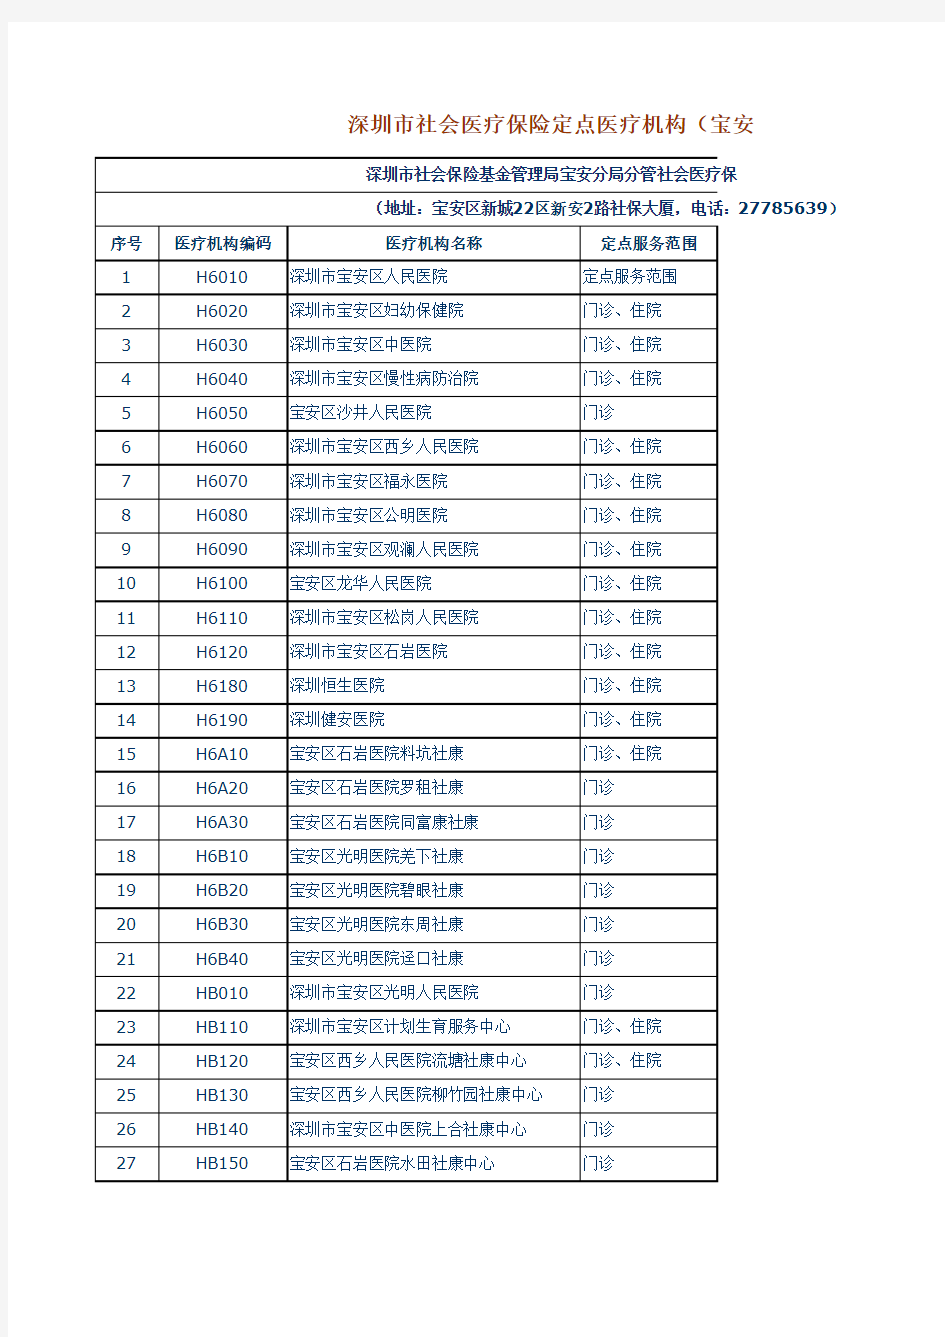 深圳市社会医疗保险定点医疗机构(宝安分局分管)